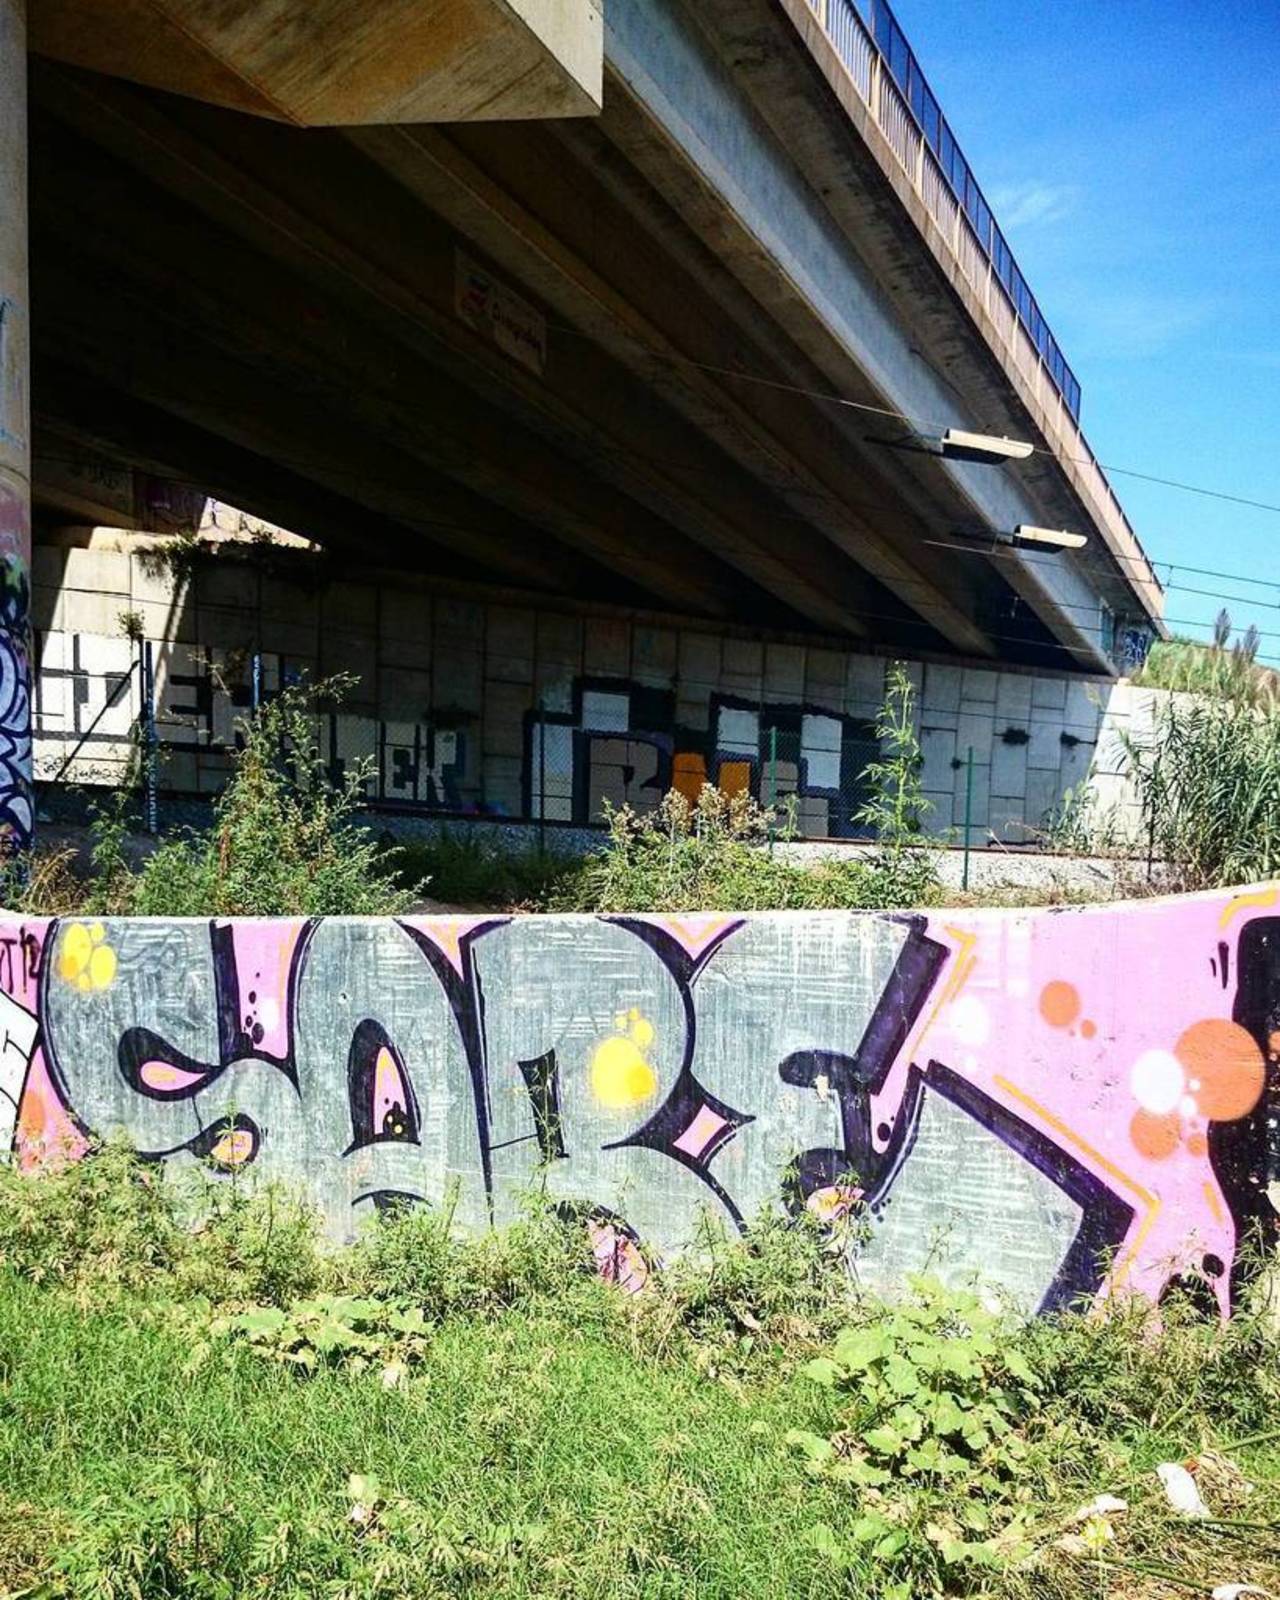 via #bcnlegends "http://bit.ly/1iYGlOp" #graffiti #streetart http://t.co/rHJAXxoBMM